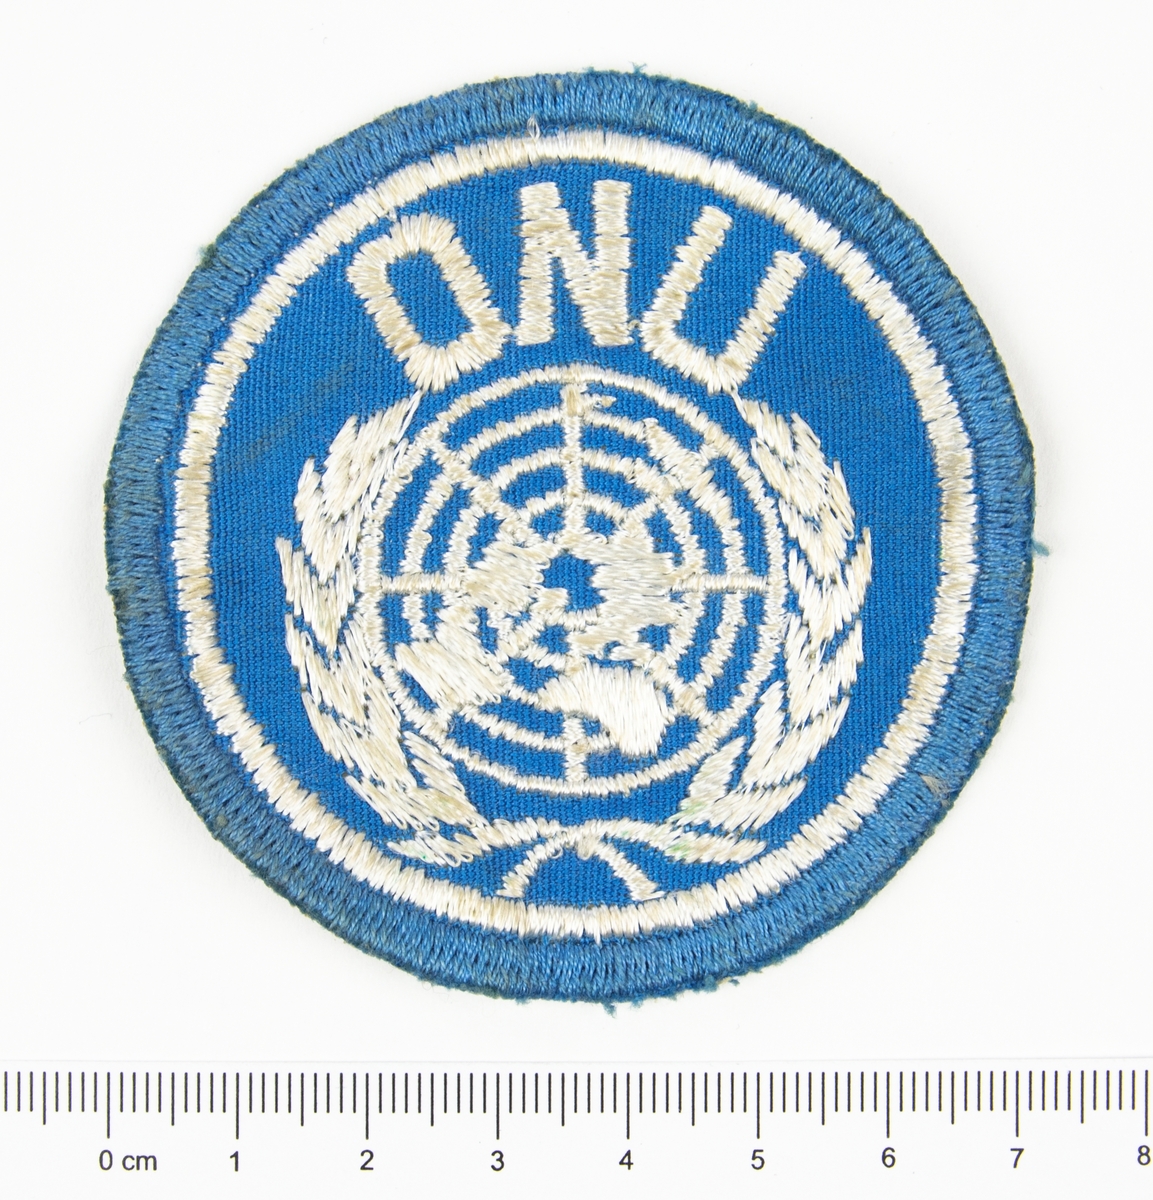 Förbandstecken. Textilt märke, ljusblått, med broderat vitt FN-emblem samt texten ONU.